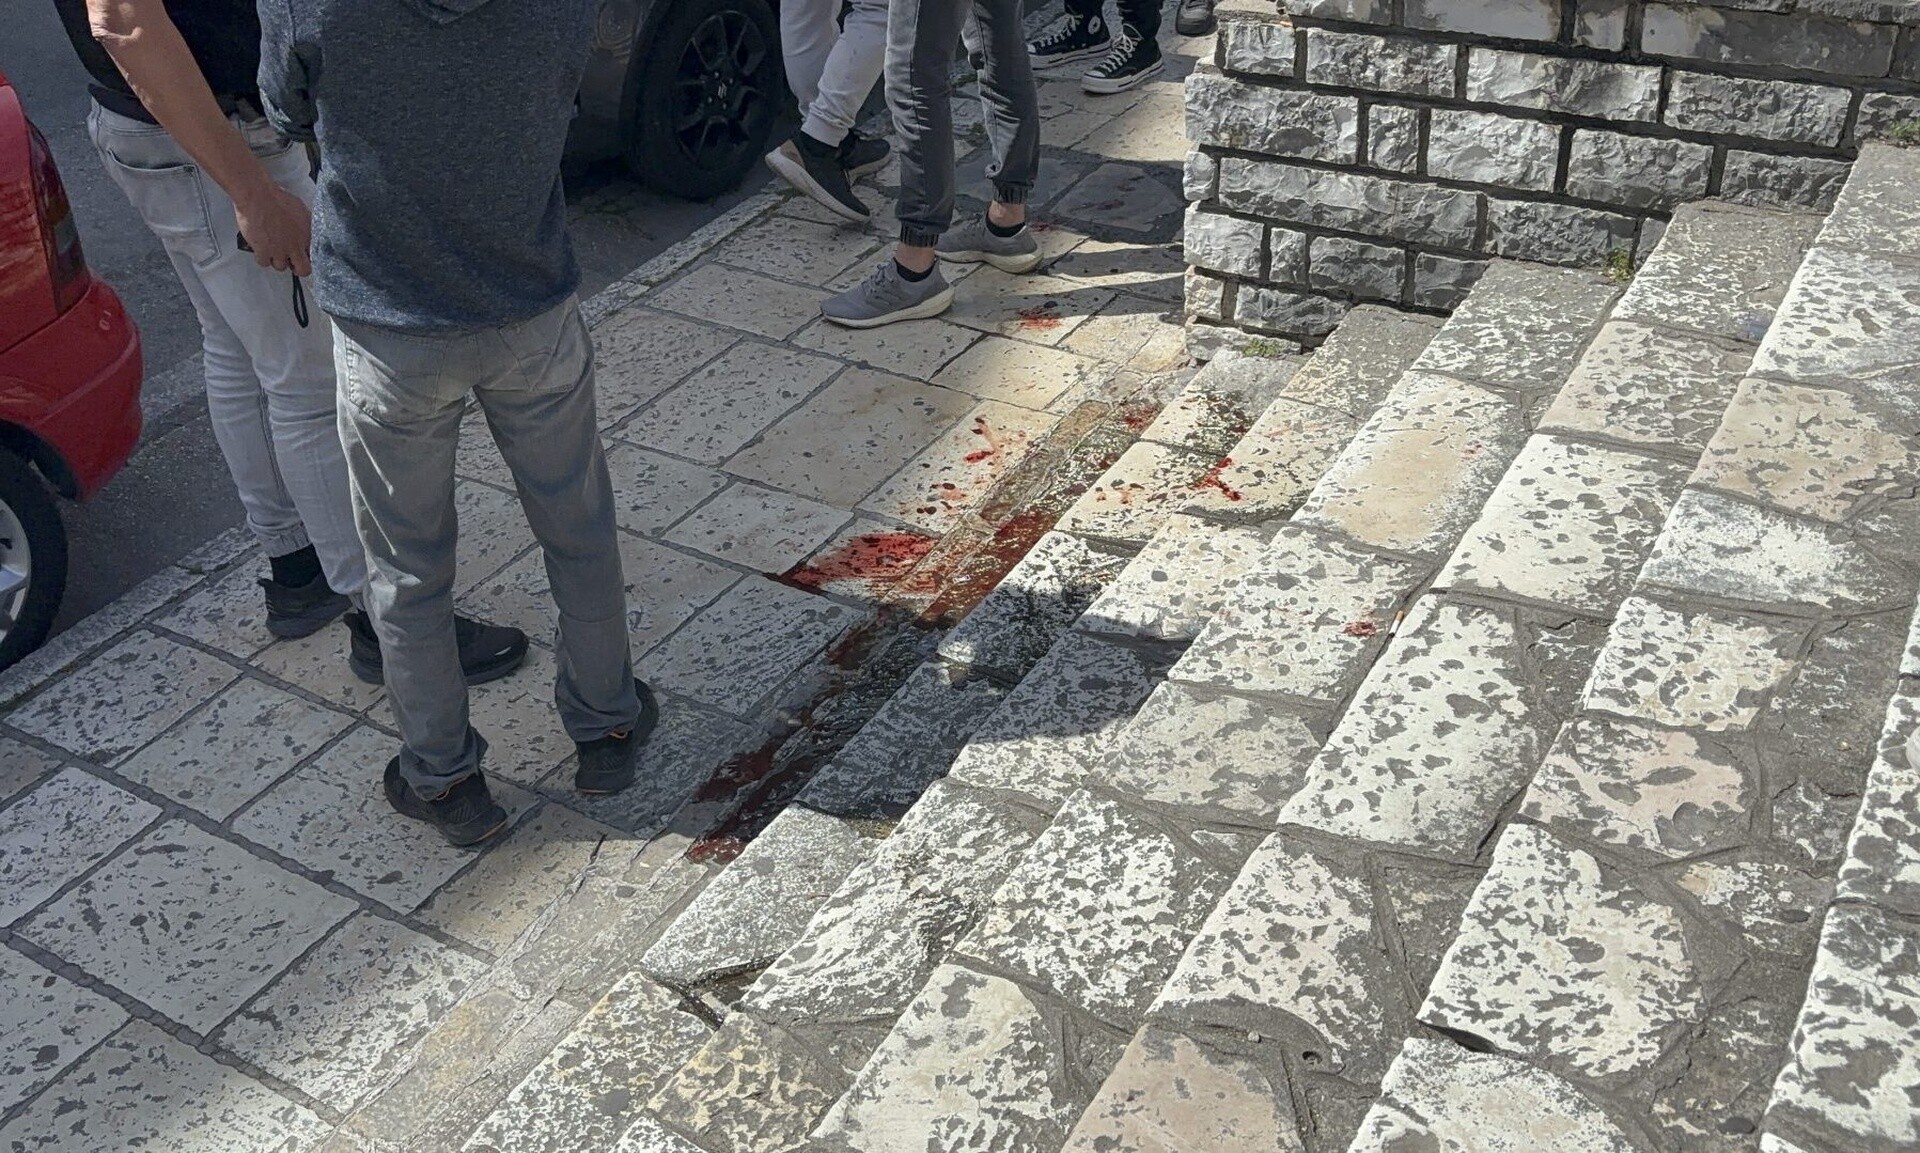 Κέρκυρα: Μαθητής σε κατάσταση αμόκ μαχαίρωσε τρία άτομα - Στο νοσοκομείο τα θύματα